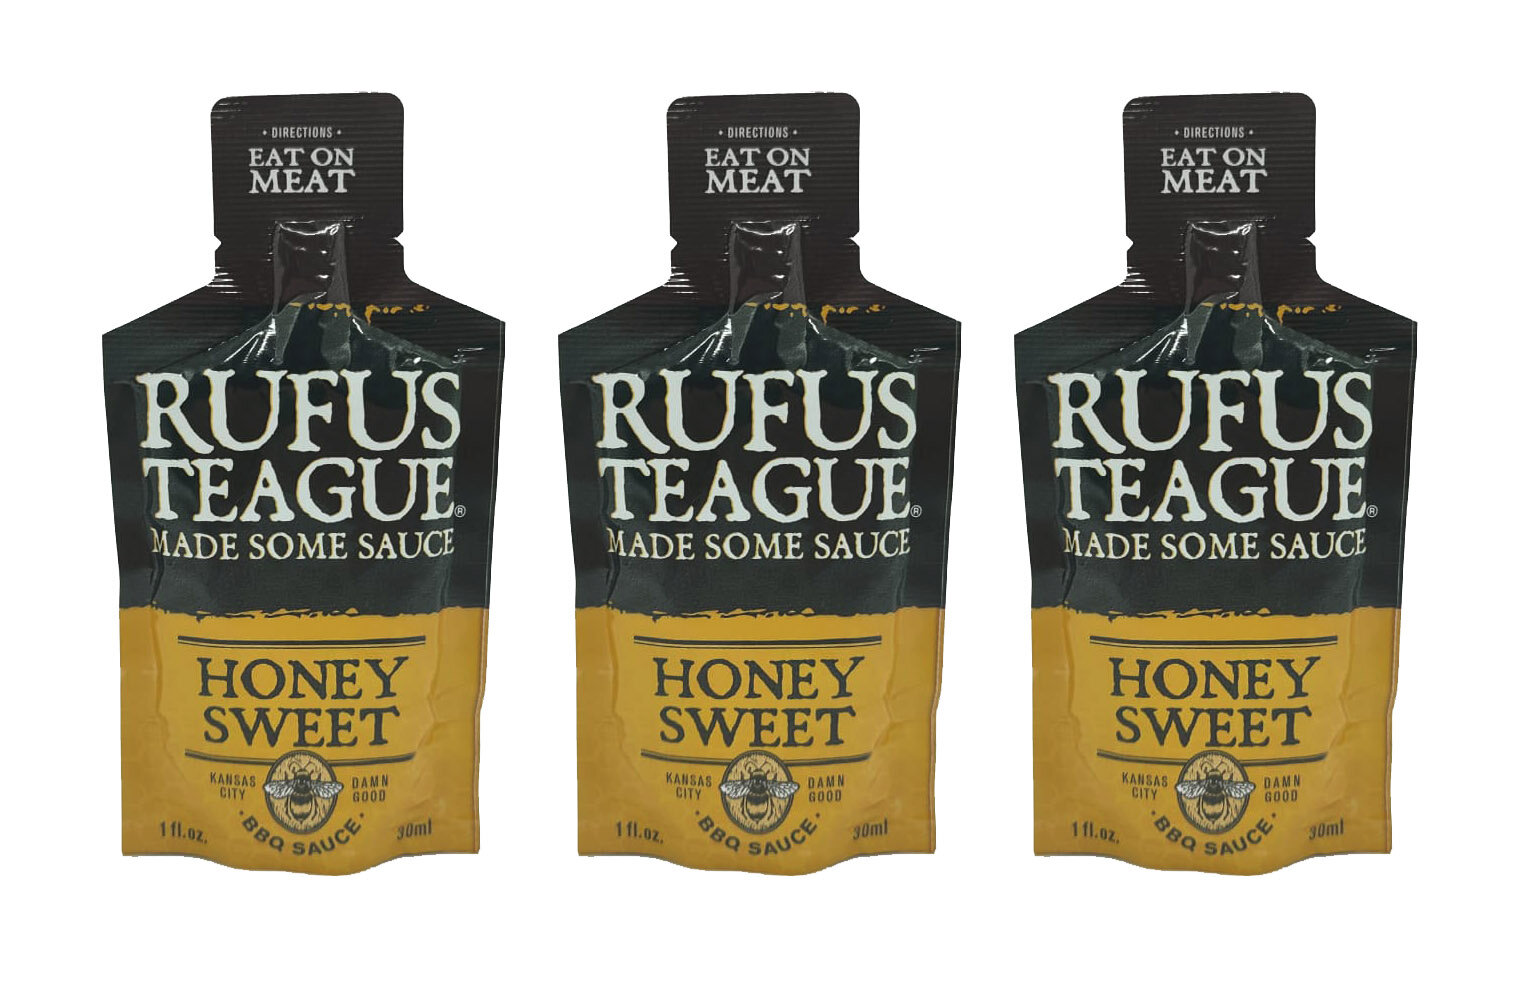 RUFUS Соус томатный Rufus Teague HONEY SWEET (Медово-сладкий 30мл), набор 3 шт